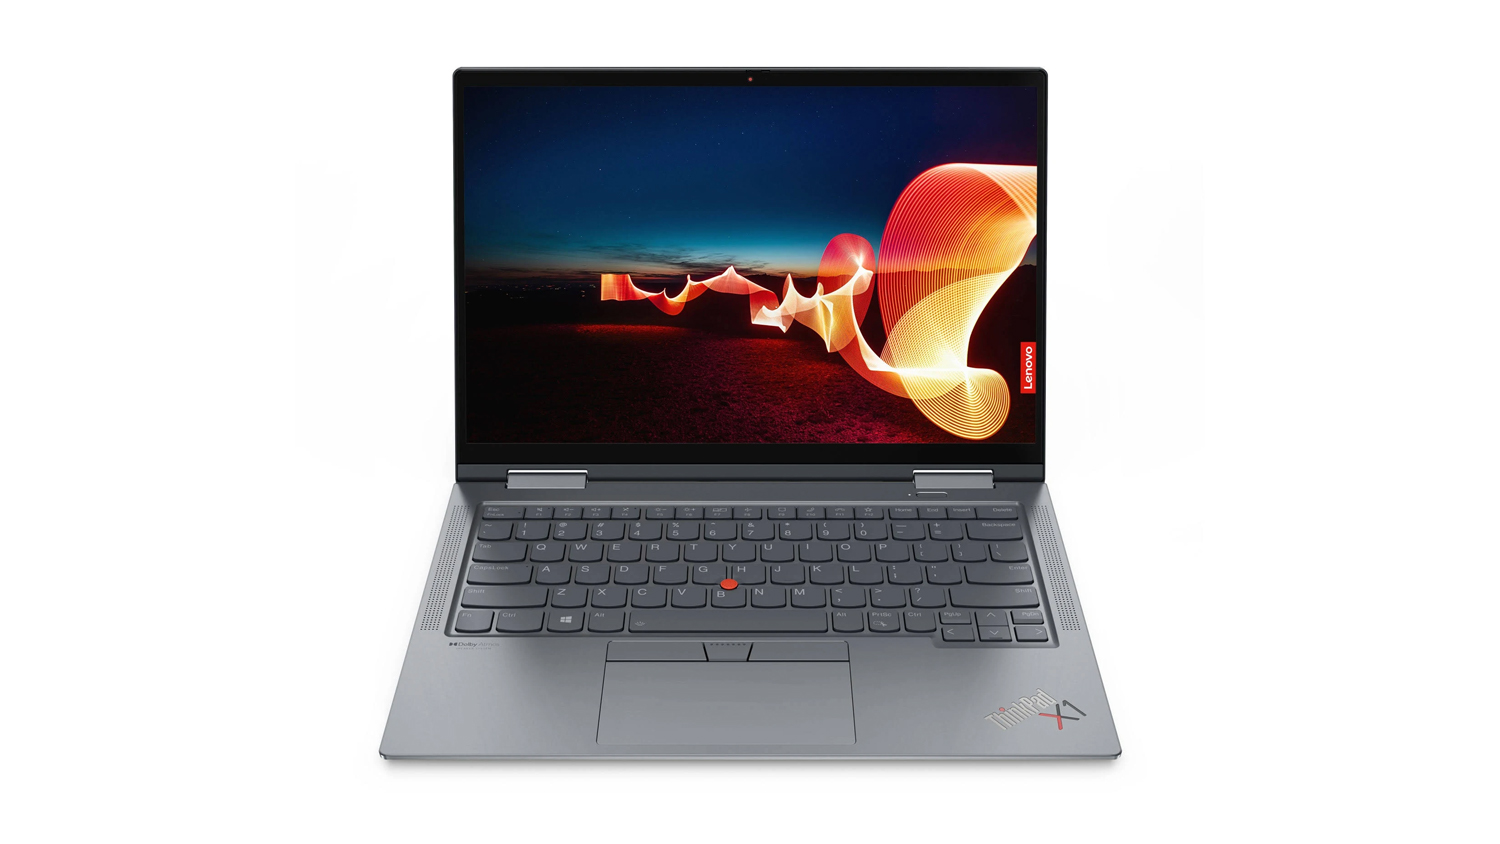 Lenovo ThinkPad X1 Yoga Gen 6 fan 'e foarkant tsjin in wite eftergrûn